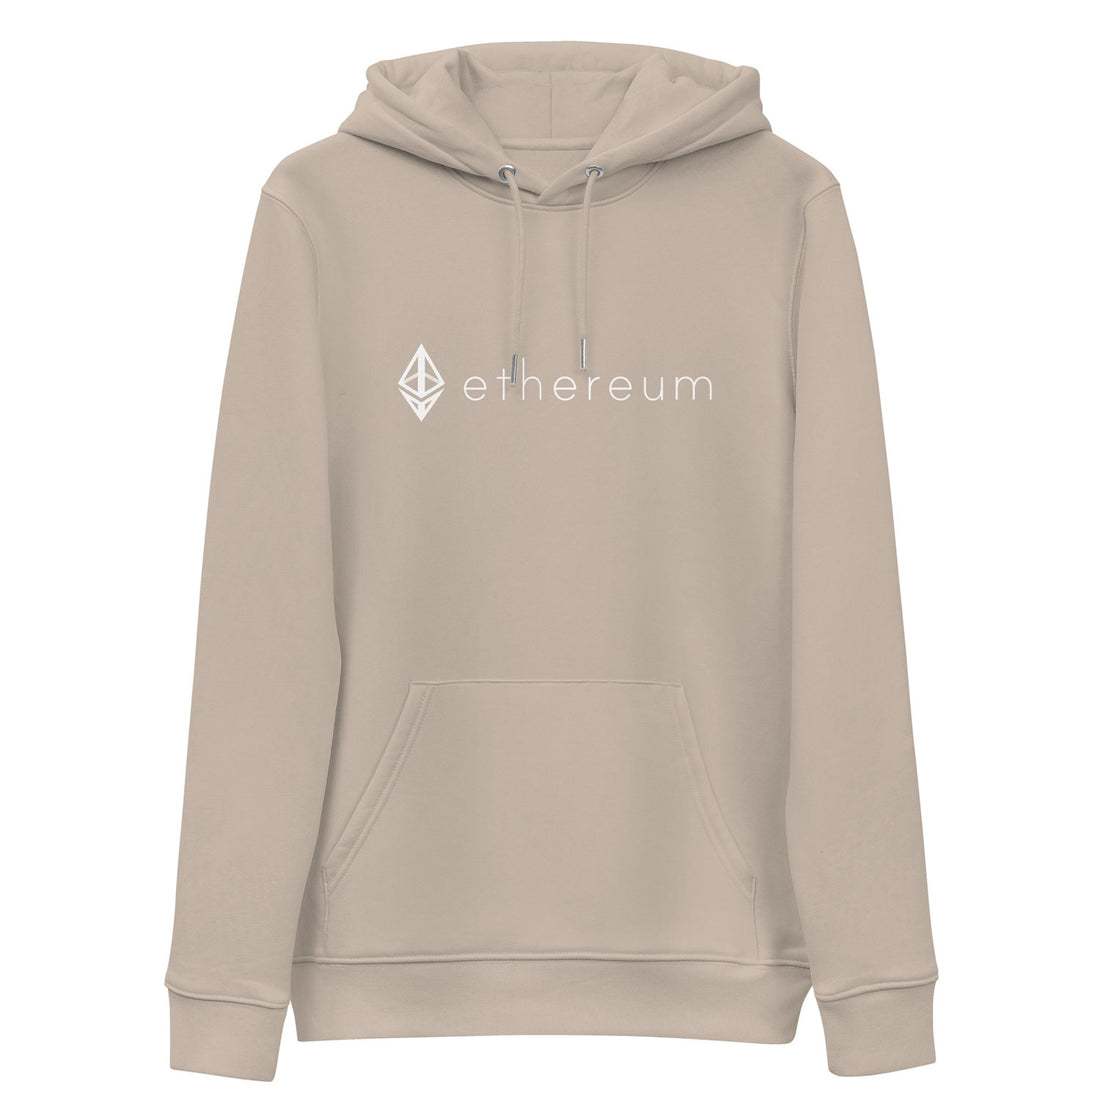 eth ethereum logo hoodie